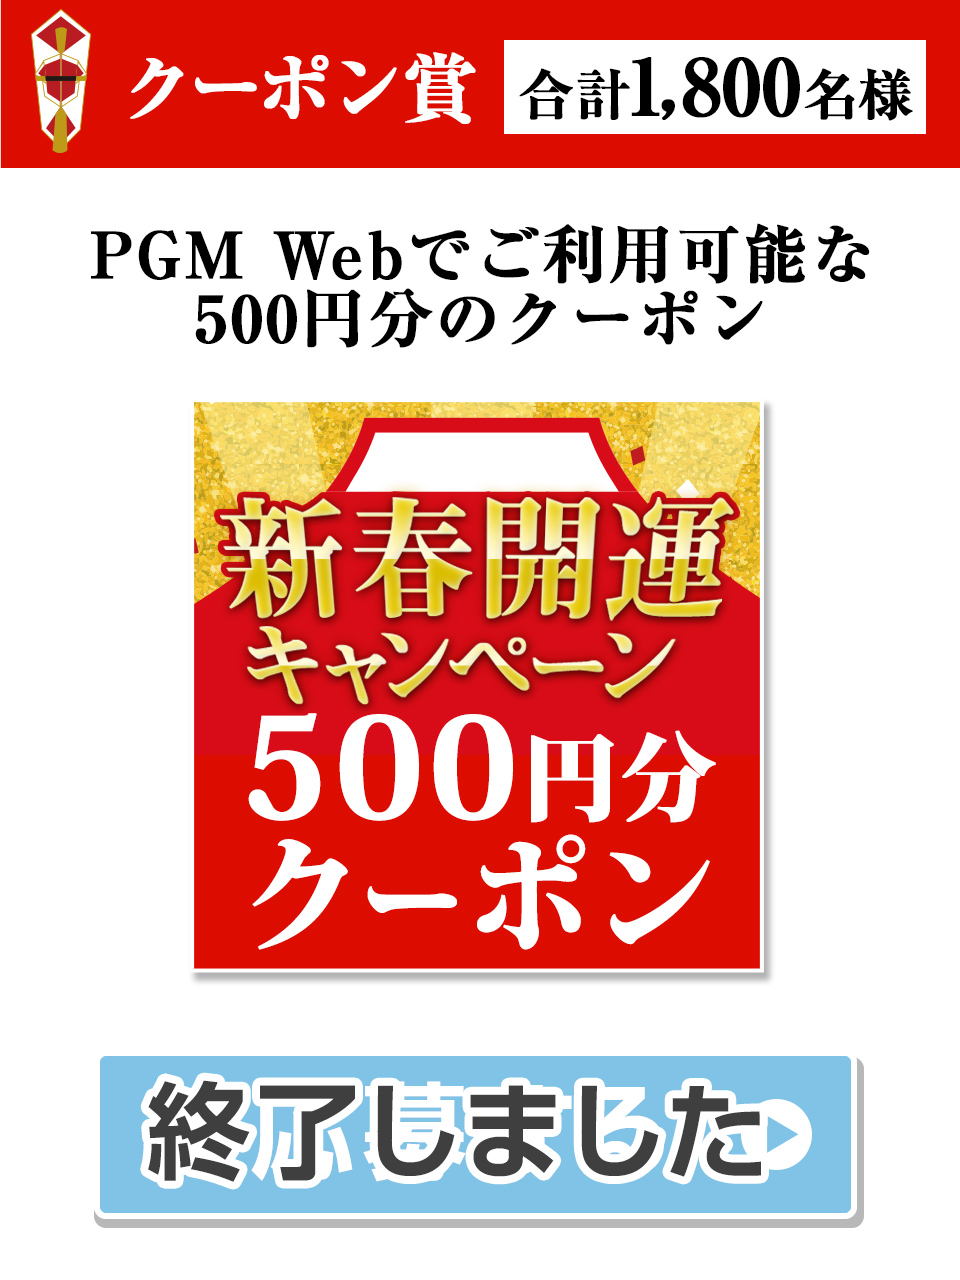 クーポン賞　PGM Webでご利用可能な500円分のクーポン 1,800名様